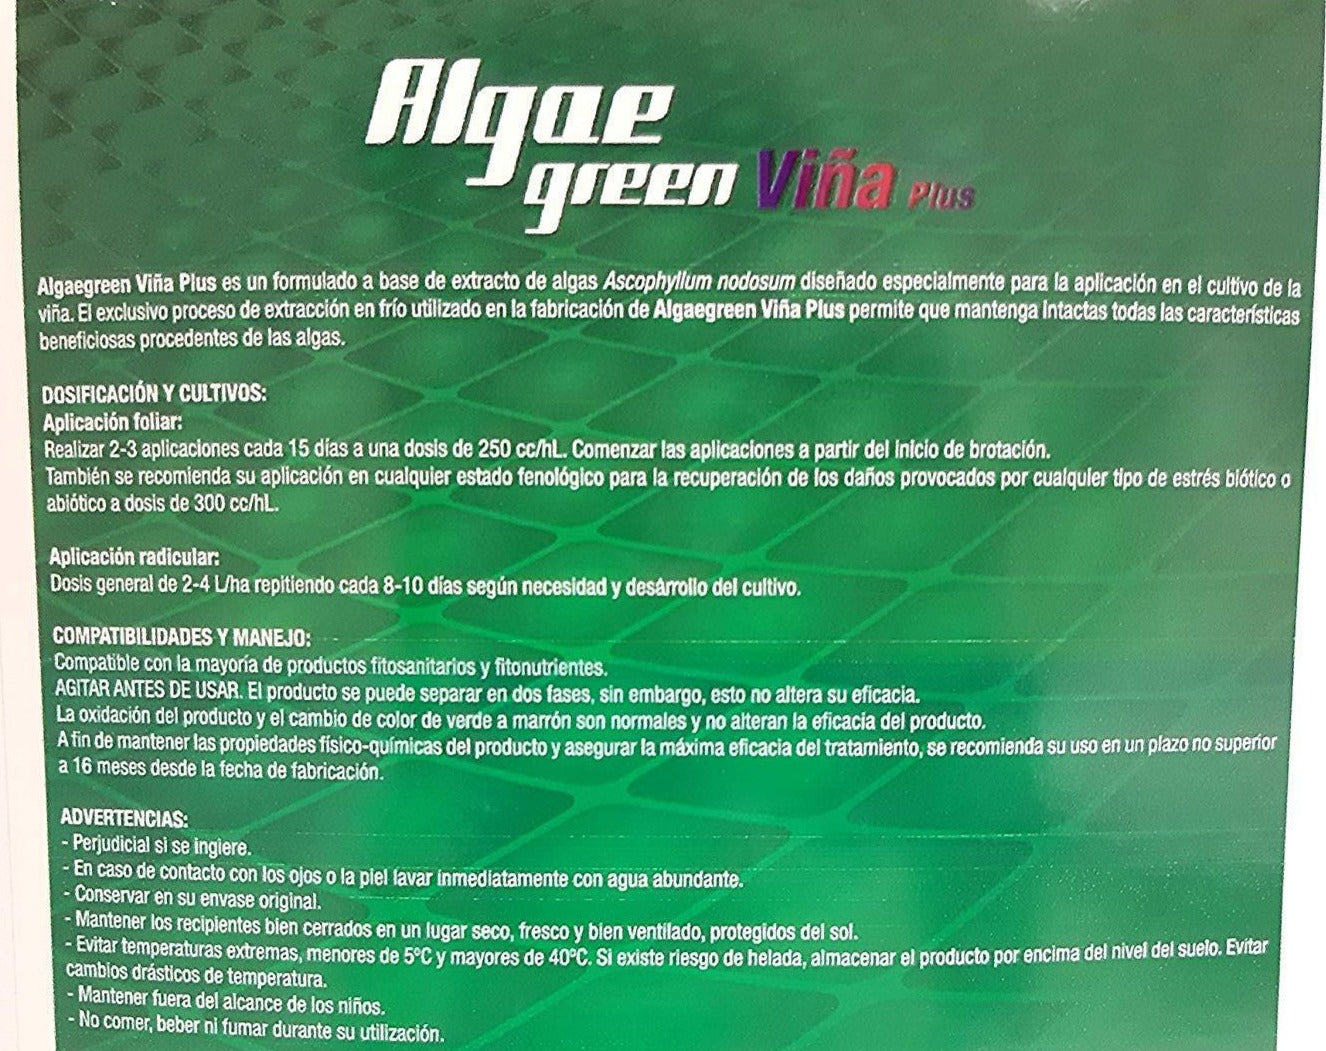 Comprar Algae Green Viña plus | Sembralia tienda online